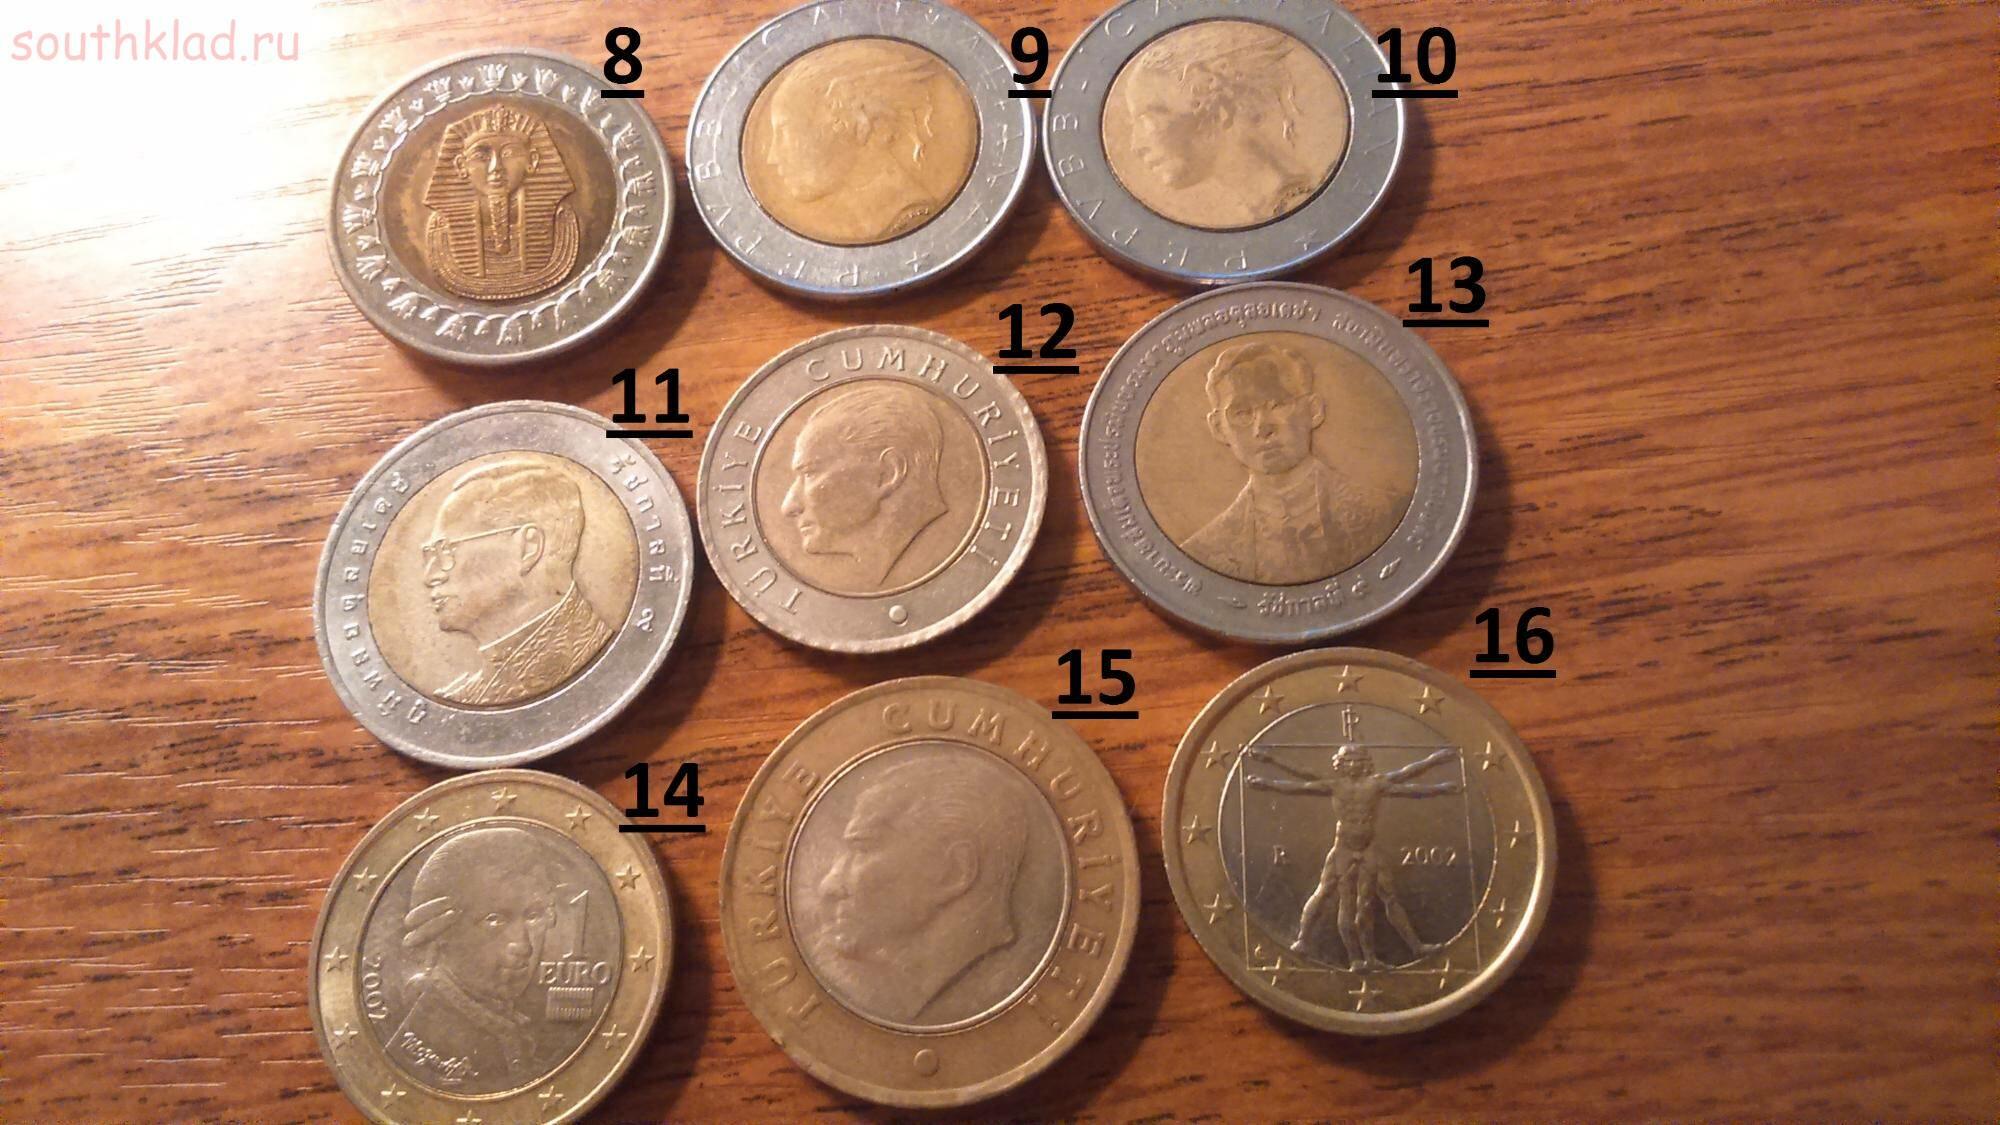 Оценить старые монеты